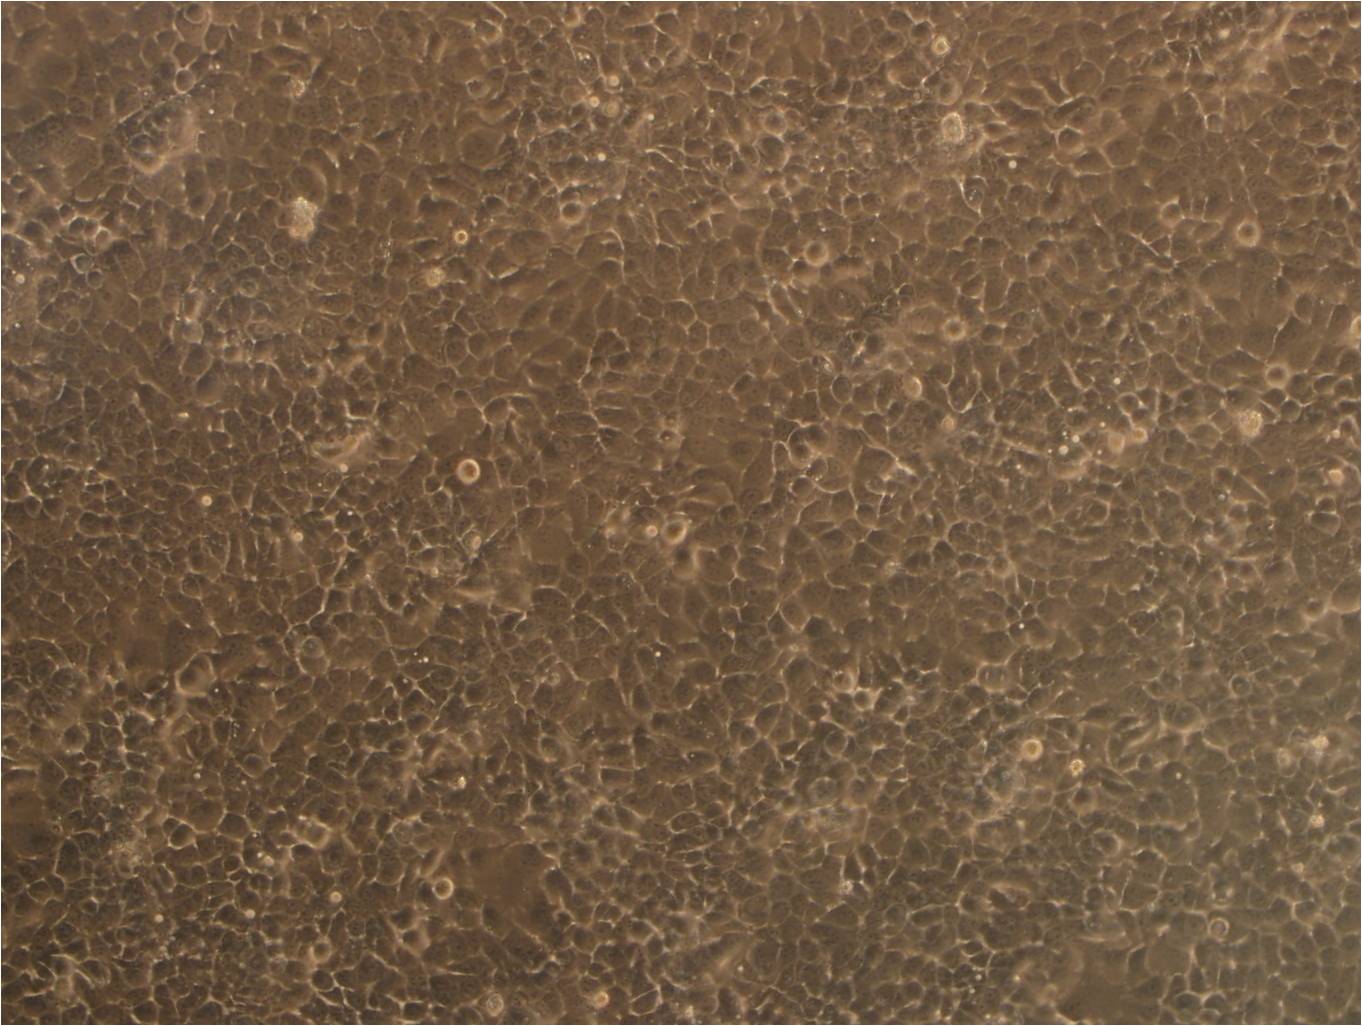 TMK-1 epithelioid cells人胃癌细胞系,TMK-1 epithelioid cells